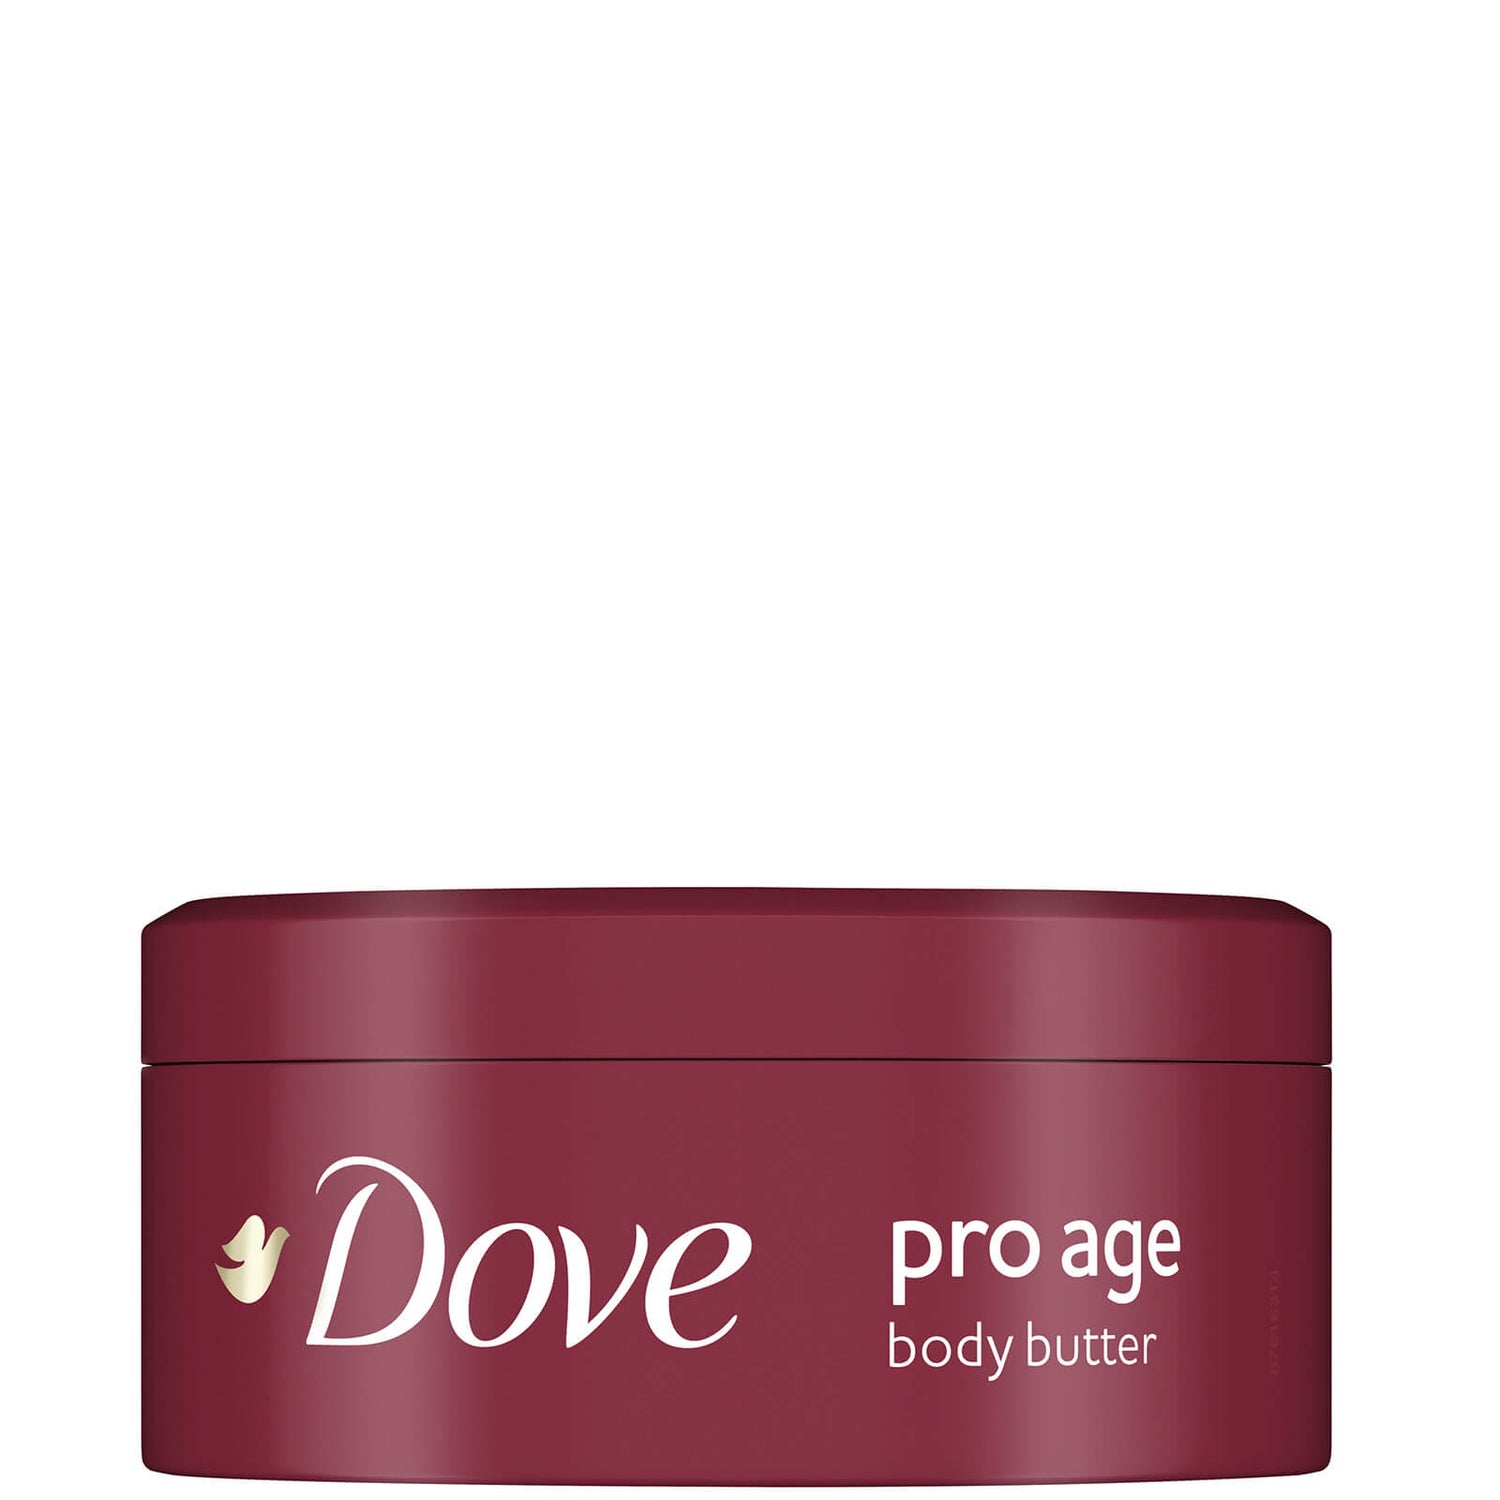 Dove Pro Age Body Butter masło do ciała